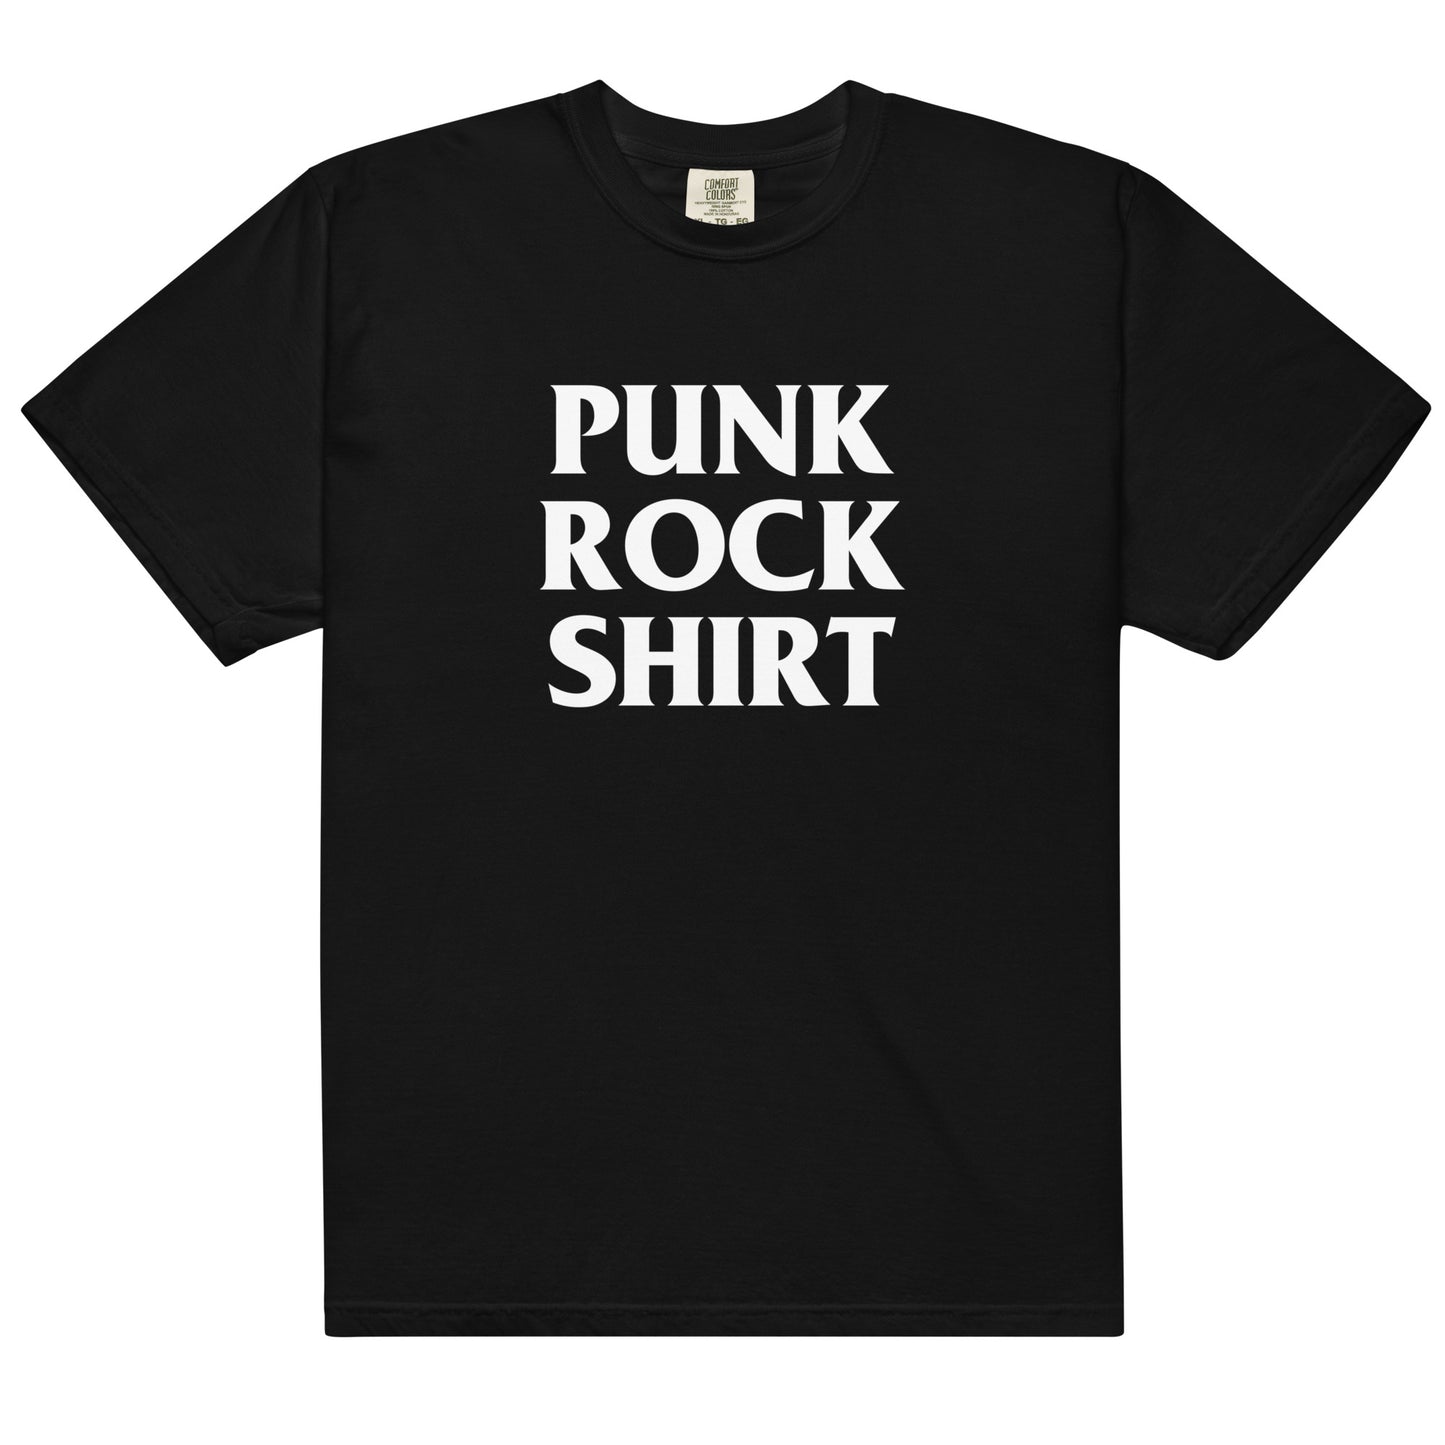 Punk Rock Shirt.